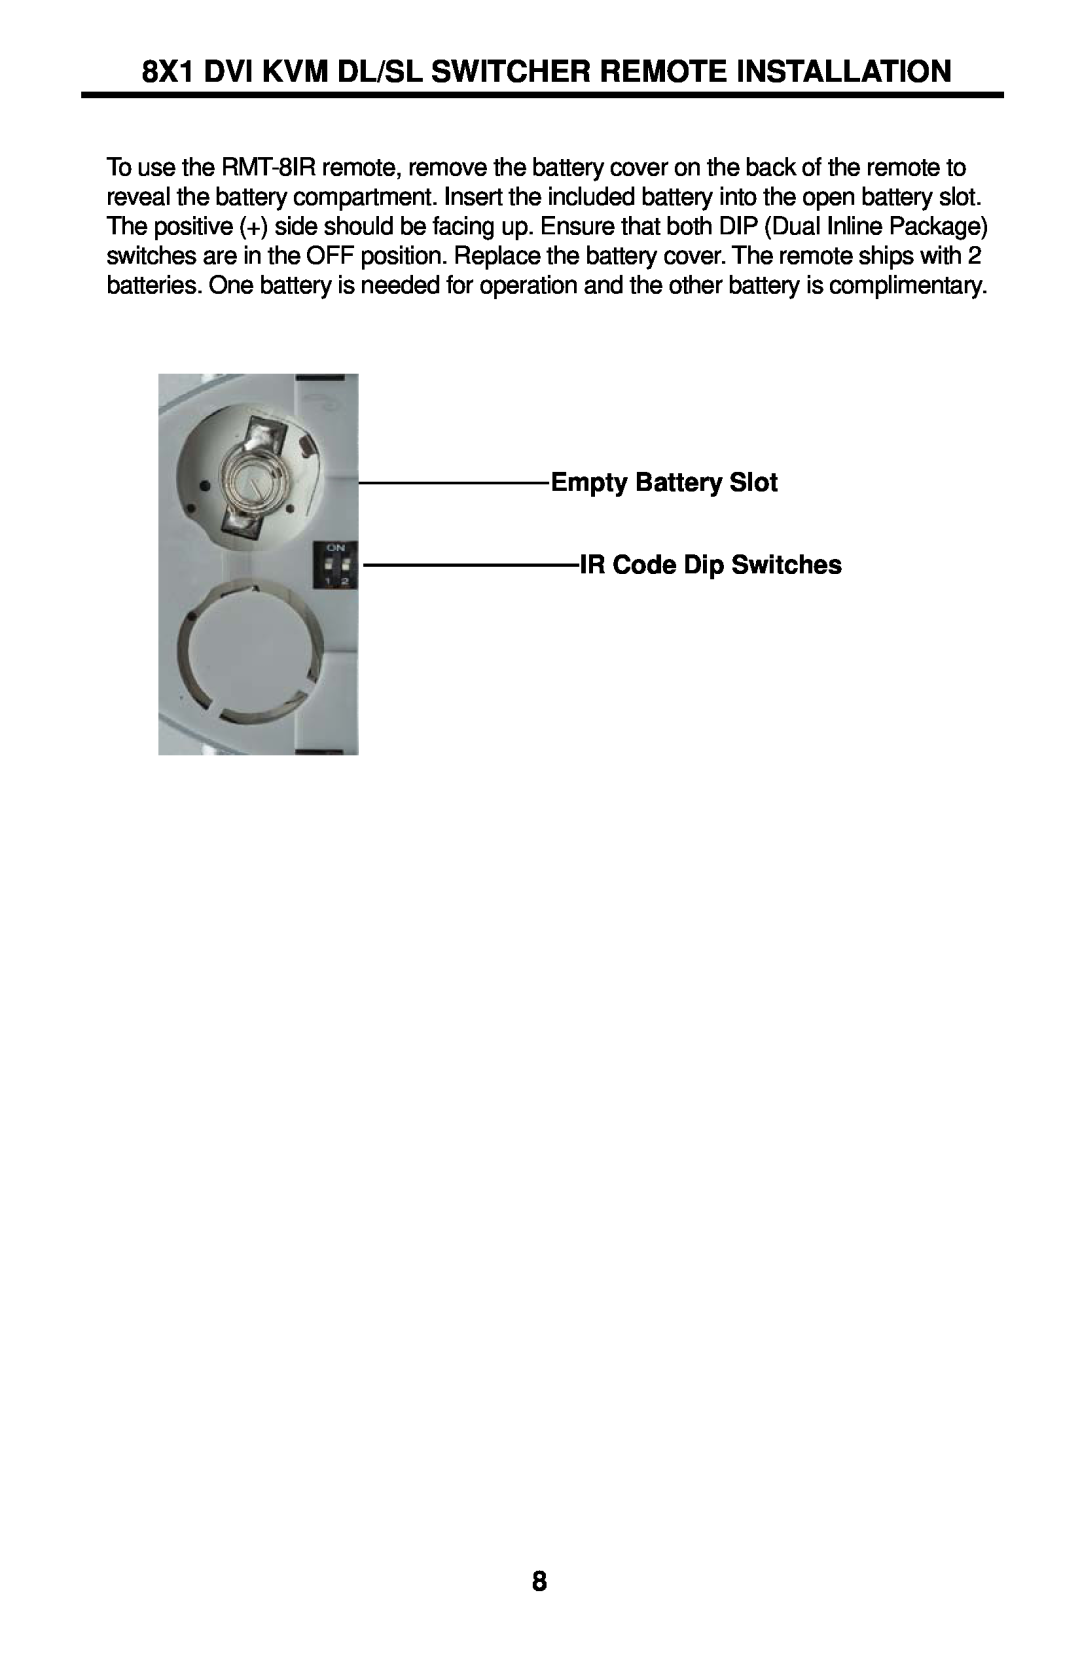 Gefen EXT-DVIKVM-841DL user manual 8X1 DVI KVM DL/SL SWITCHER REMOTE INSTALLATION, Empty Battery Slot IR Code Dip Switches 